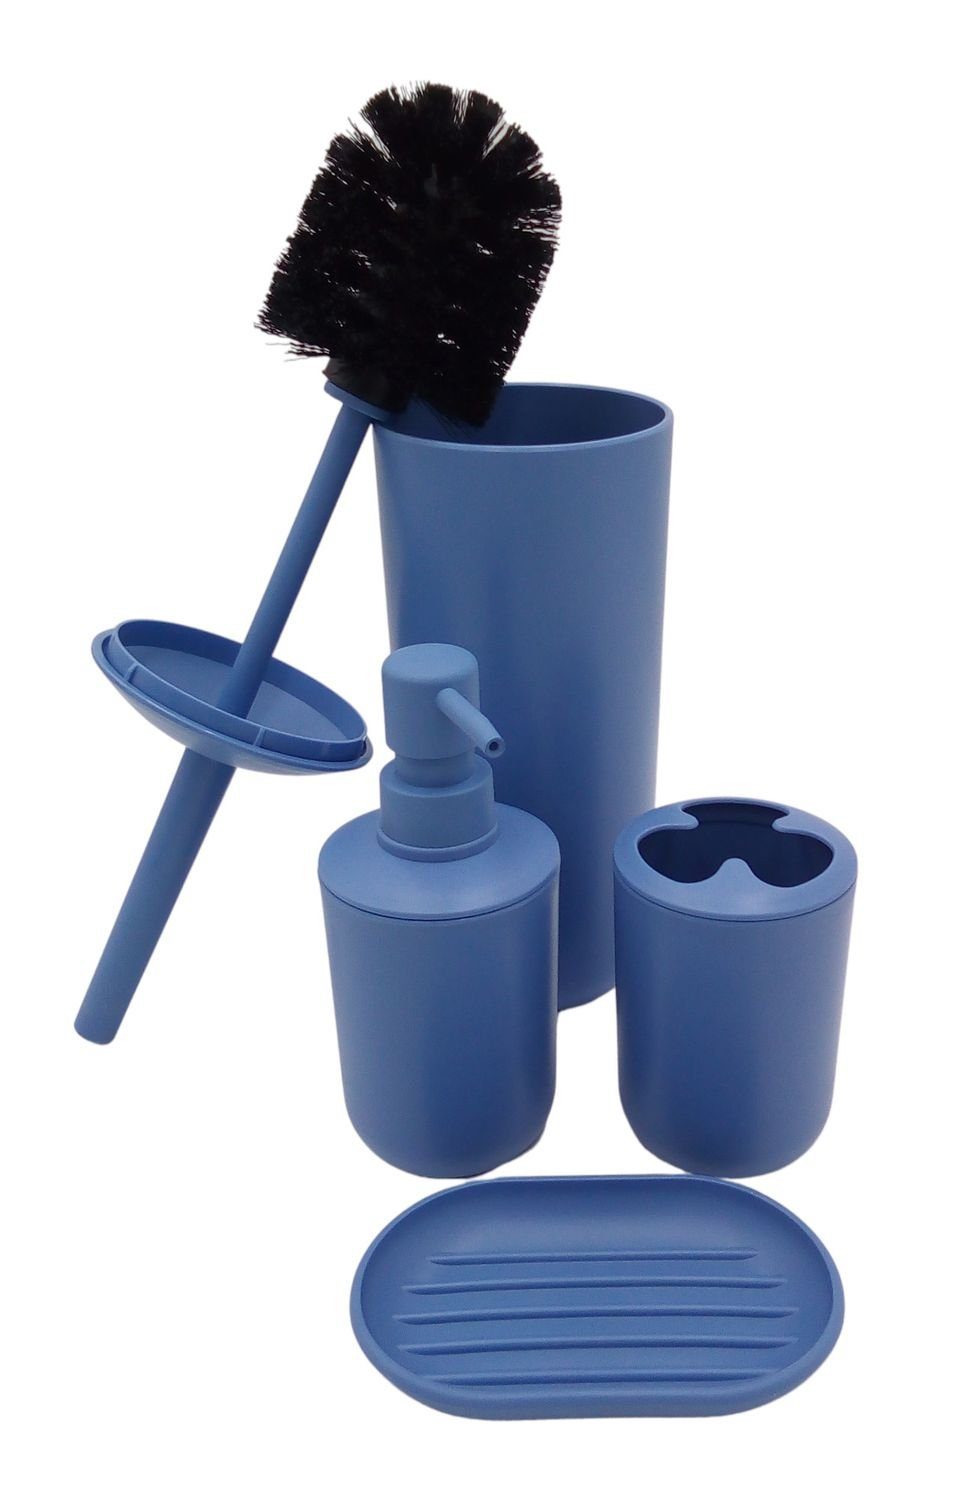 BURI WC-Garnitur Badezimmer-Set in blau Seifenspender Toilettenbürste Zahnputzbecher Seifenschale